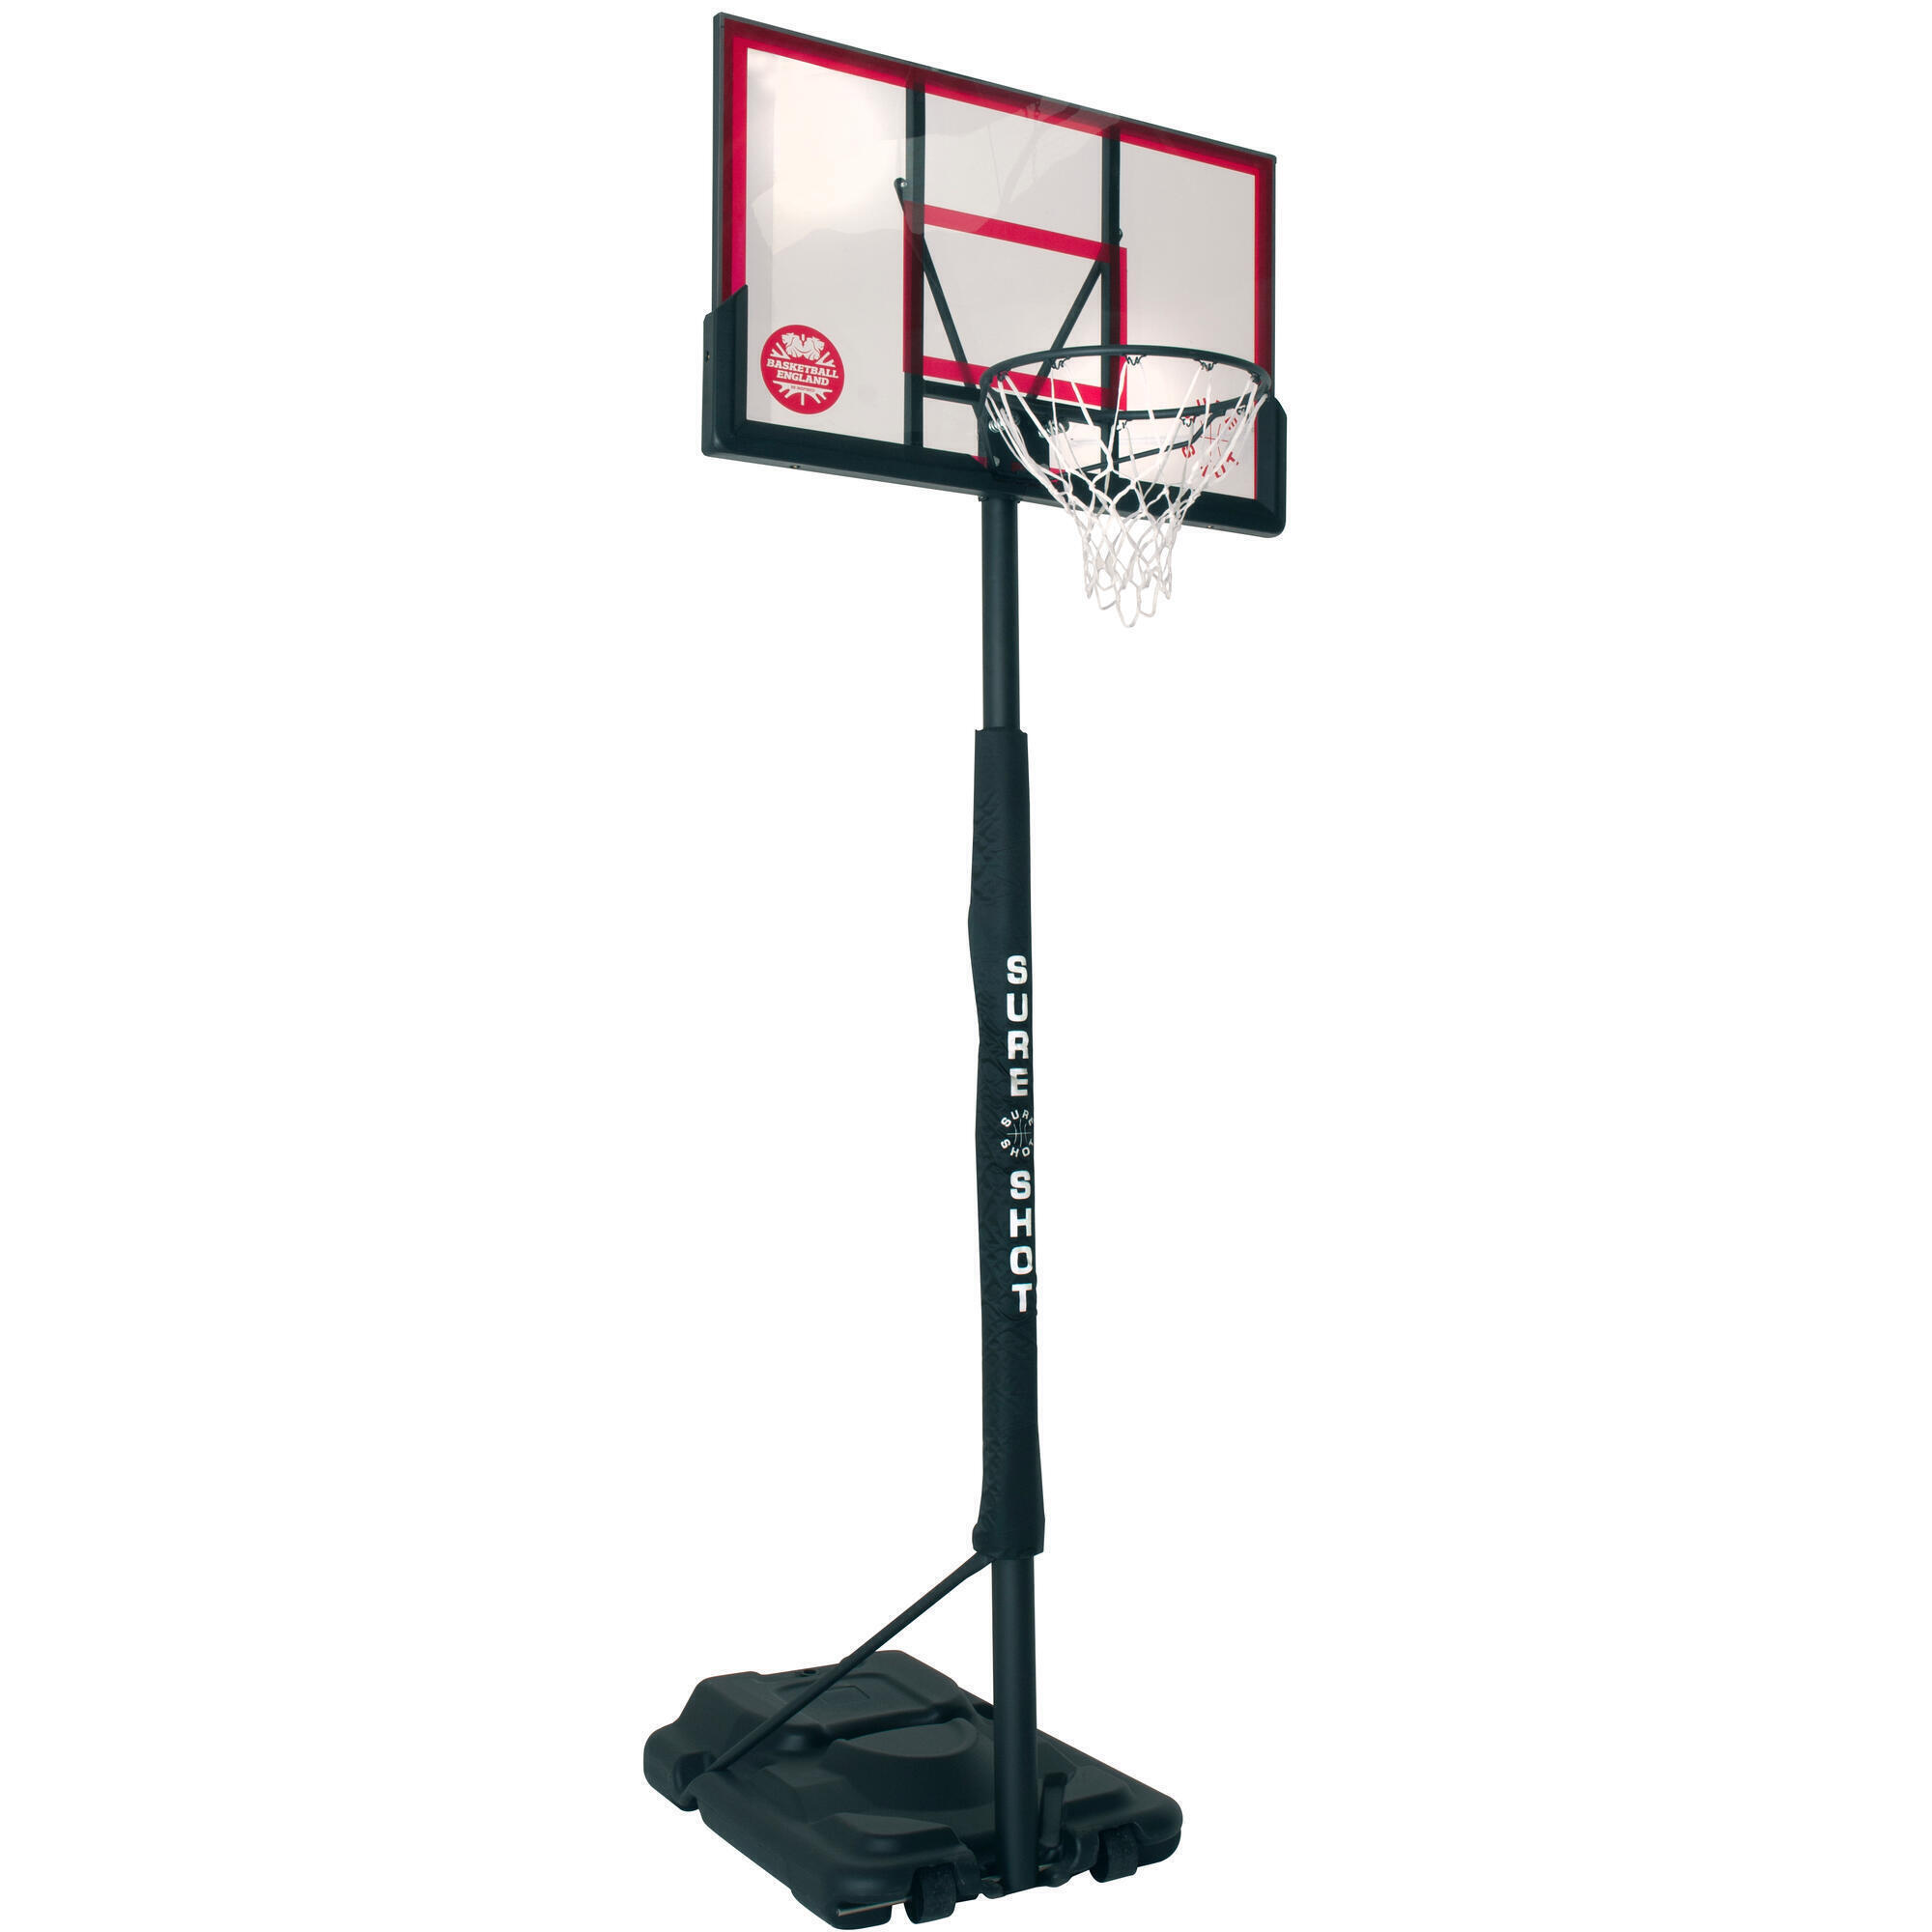 Sure Shot Telescopic Basketball Hoop with an Acrylic Backboard 1/5